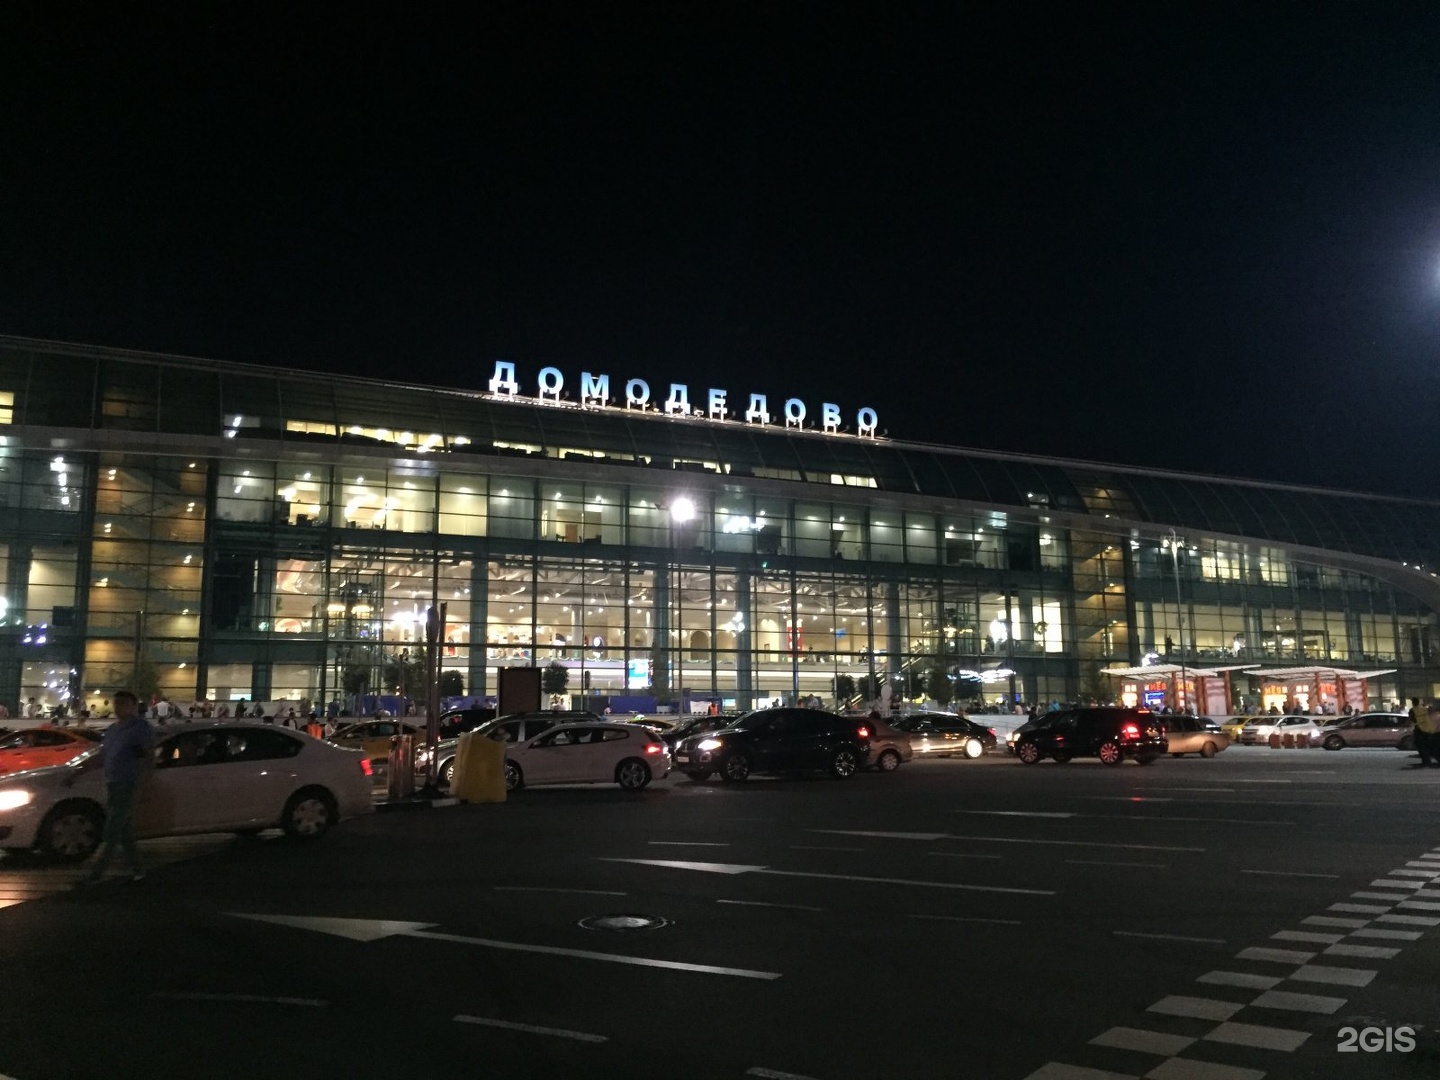 Домодедово фото аэропорта снаружи сейчас